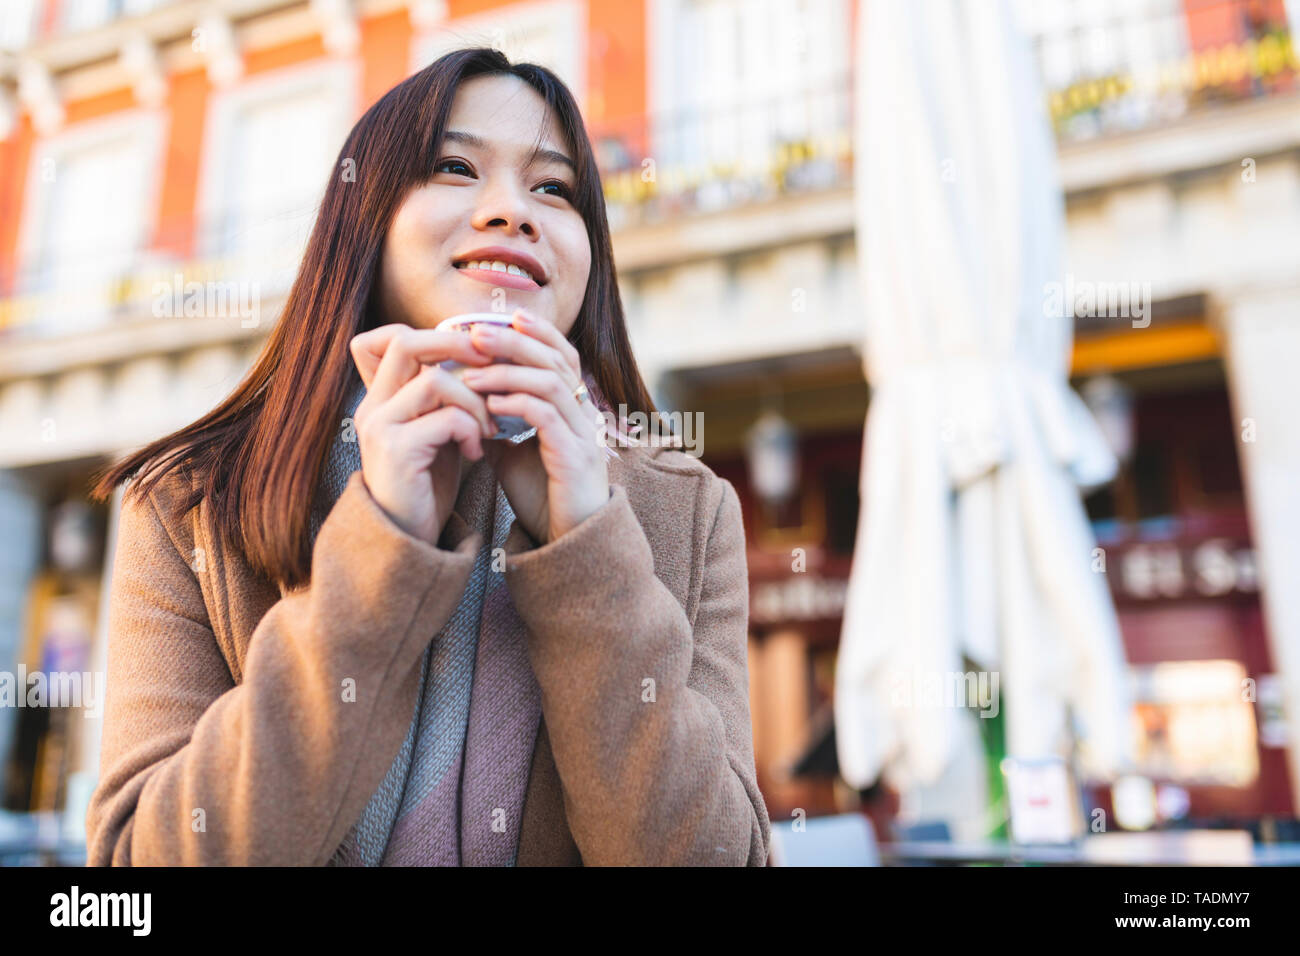 Spanien, Madrid, lächelnden jungen Frau in einem Café am Plaza Mayor Stockfoto